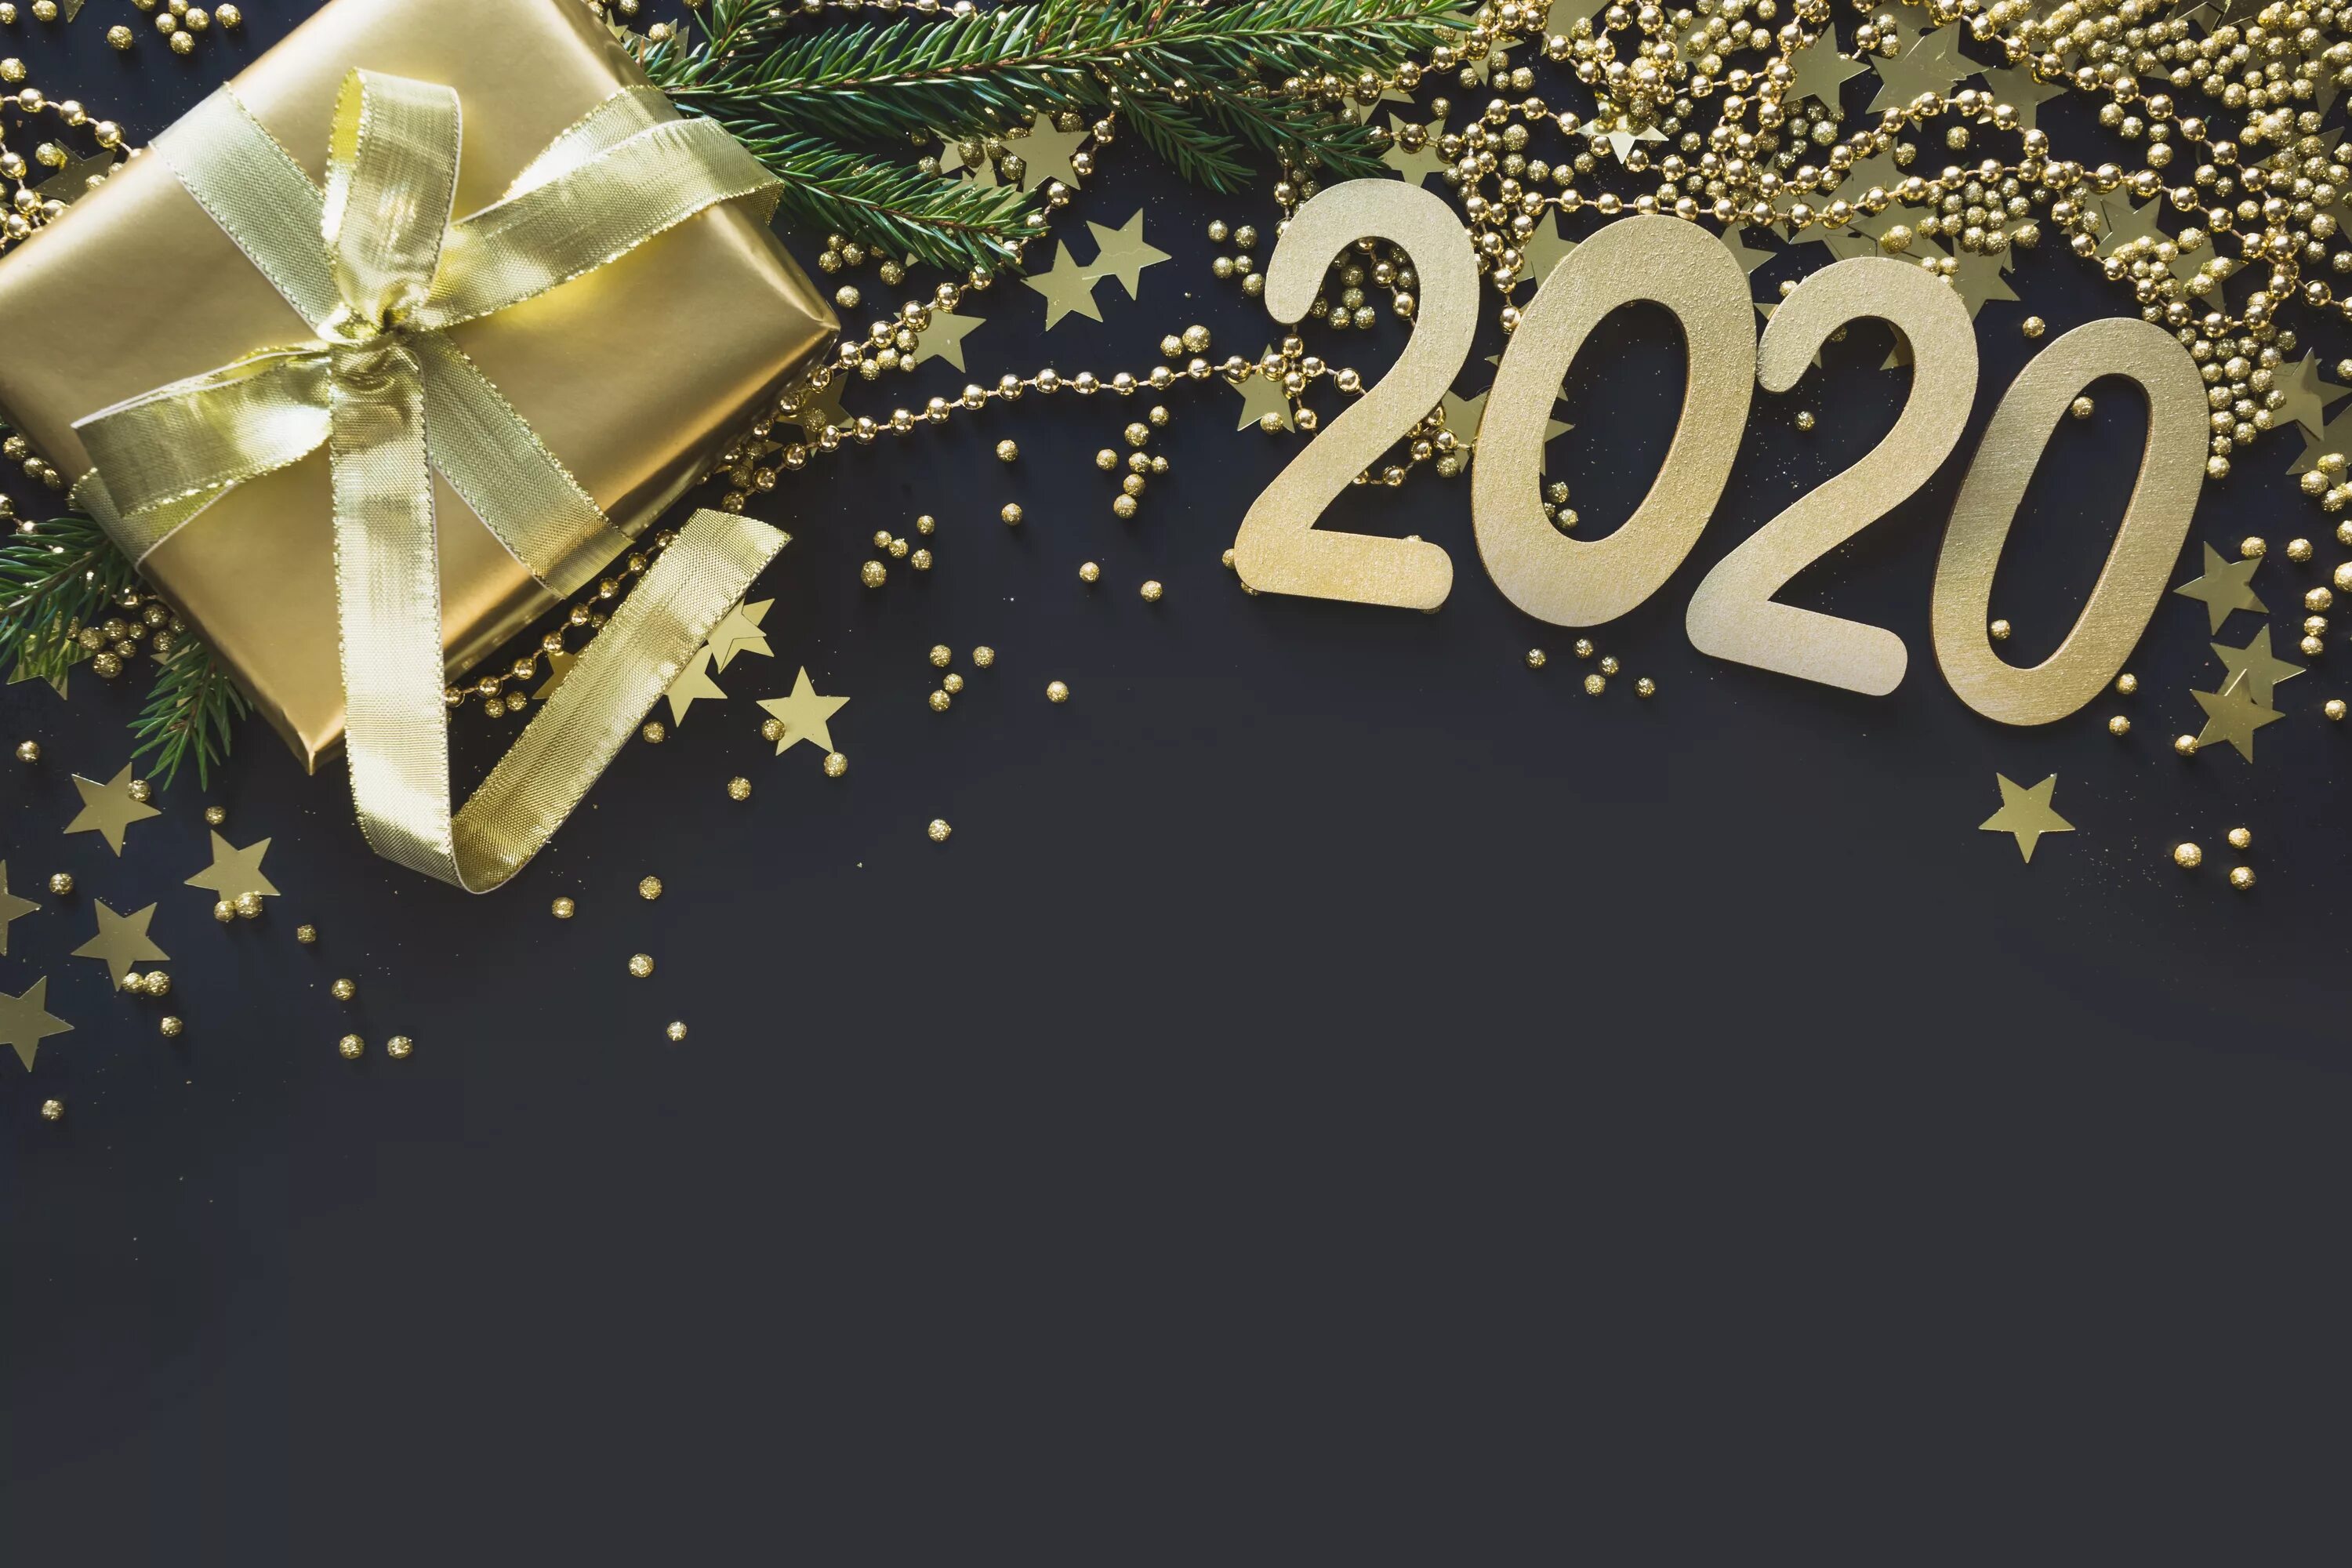 Новый год 2020 варианты. Новый год 2020 обои. Новогодние обои с надписью. Картинка новый год 2022 стильная. Новый год фон 2020.